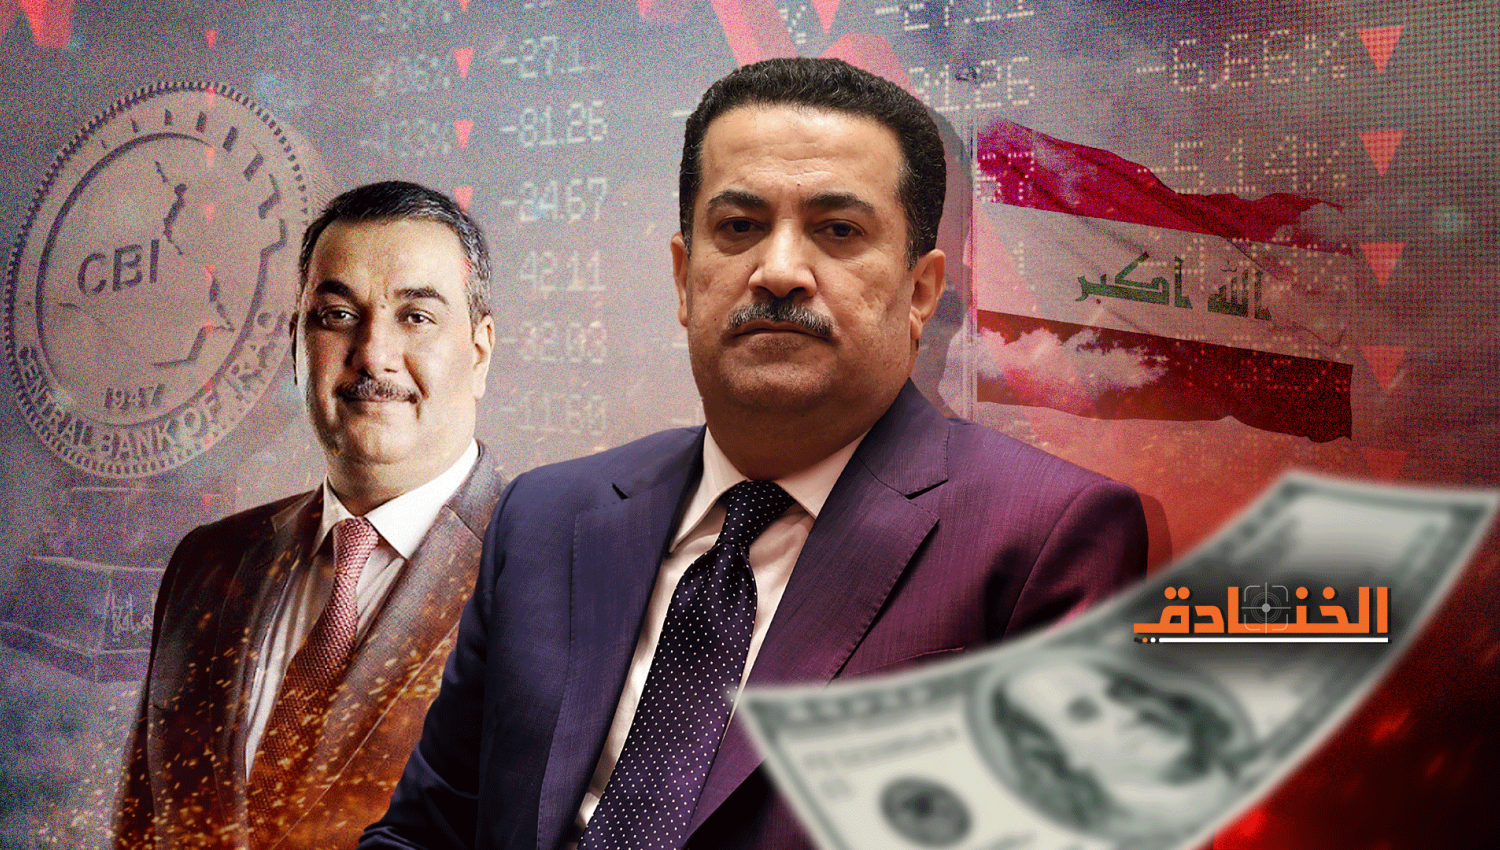 كيف يُضعف الأمريكيون العملة العراقية؟